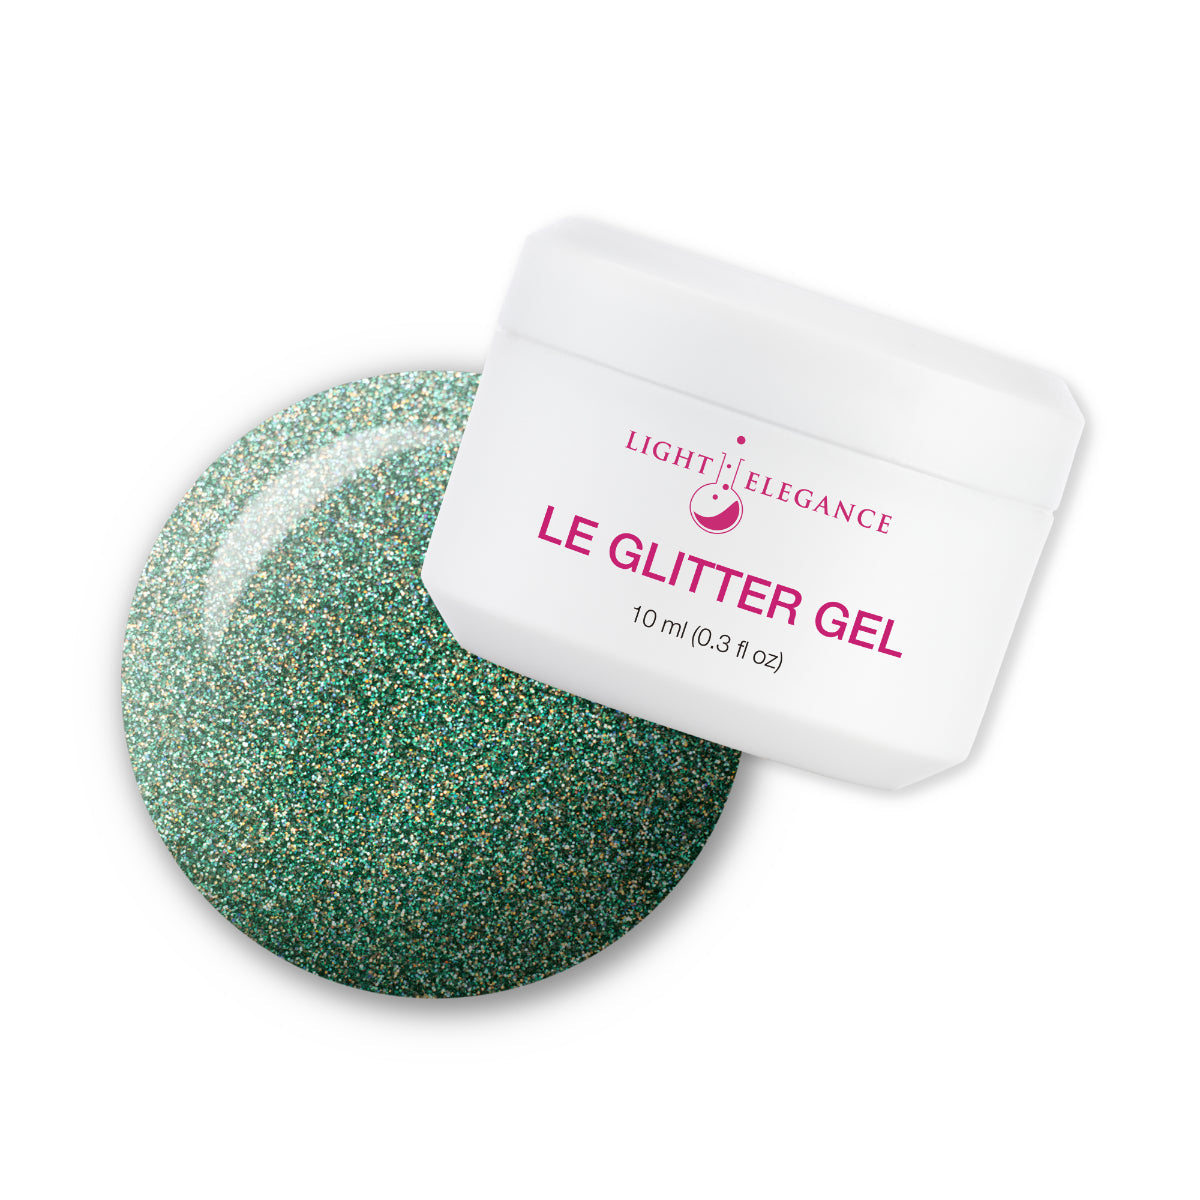 Light Elegance Glitter Gel - Bravo! :: New Packaging